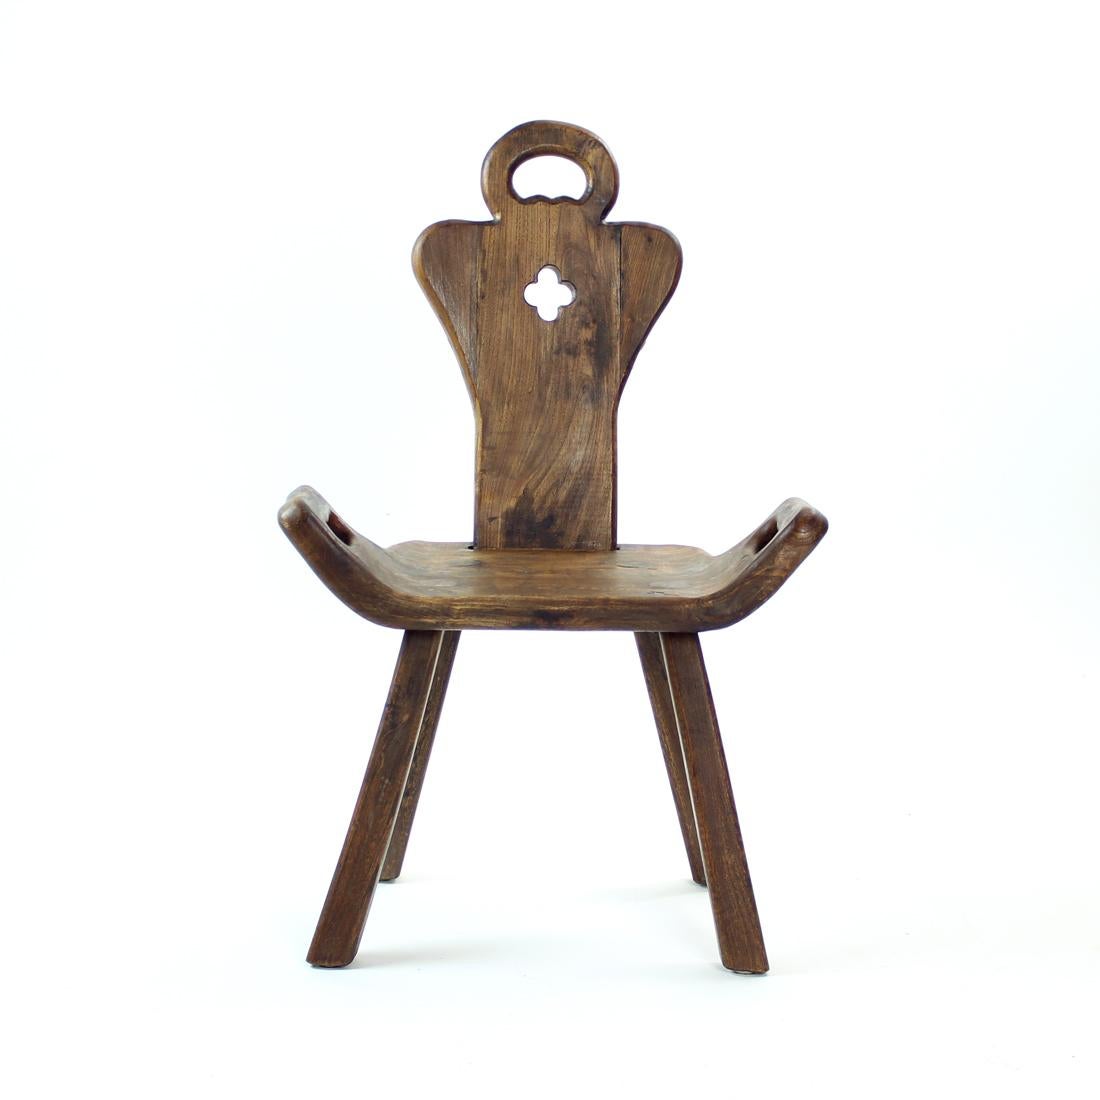 Schöner Vintage-Stuhl aus dem Anfang des 20. Jahrhunderts in Holland. Wir haben zwei von diesen zur Verfügung, sie sind gleich, aber jeder ist etwas anders, da sie handgefertigt sind. Tolles Design für einen Gelegenheitsstuhl, der niedriger ist als